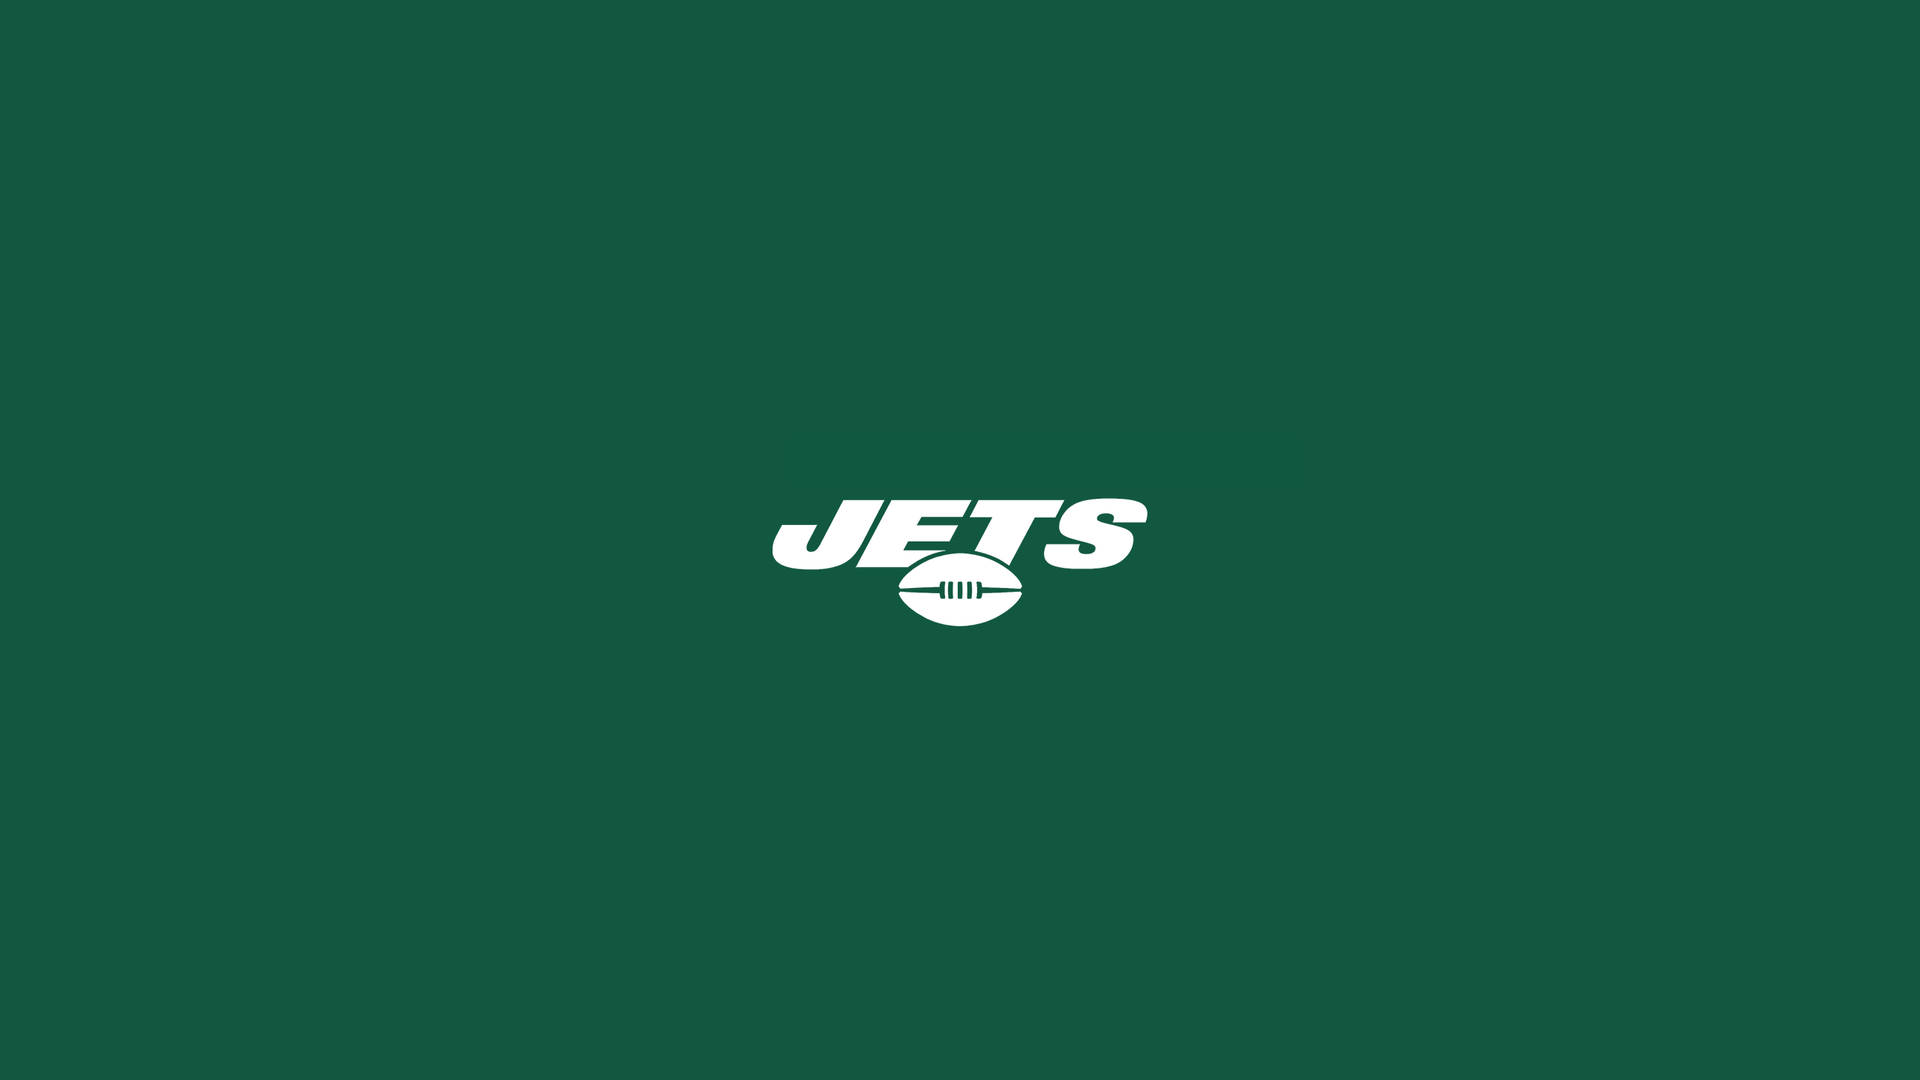 Ny Jets Bold Typeface Wallpaper